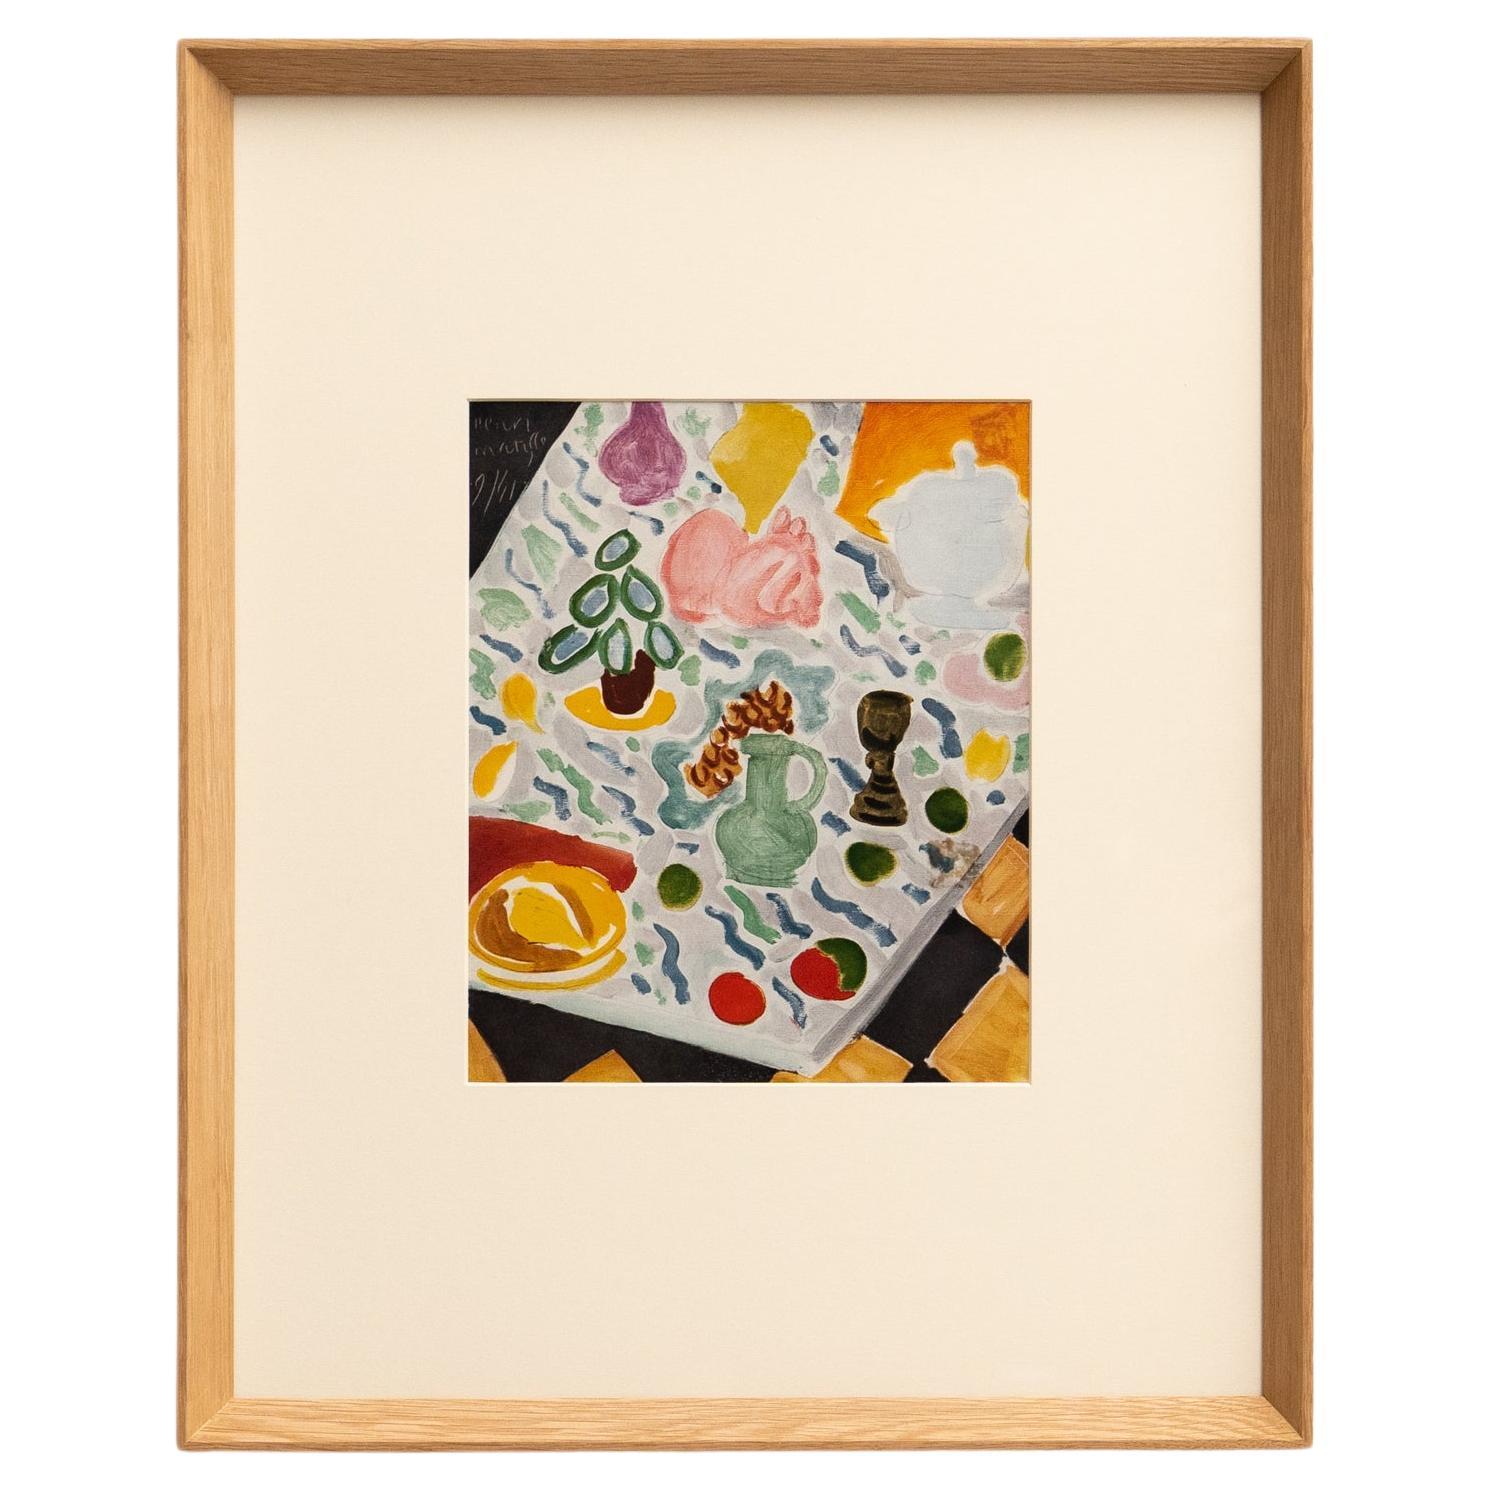 Rare Color Lithograph: A Glimpse into Matisse's Artistic Mastery For Sale